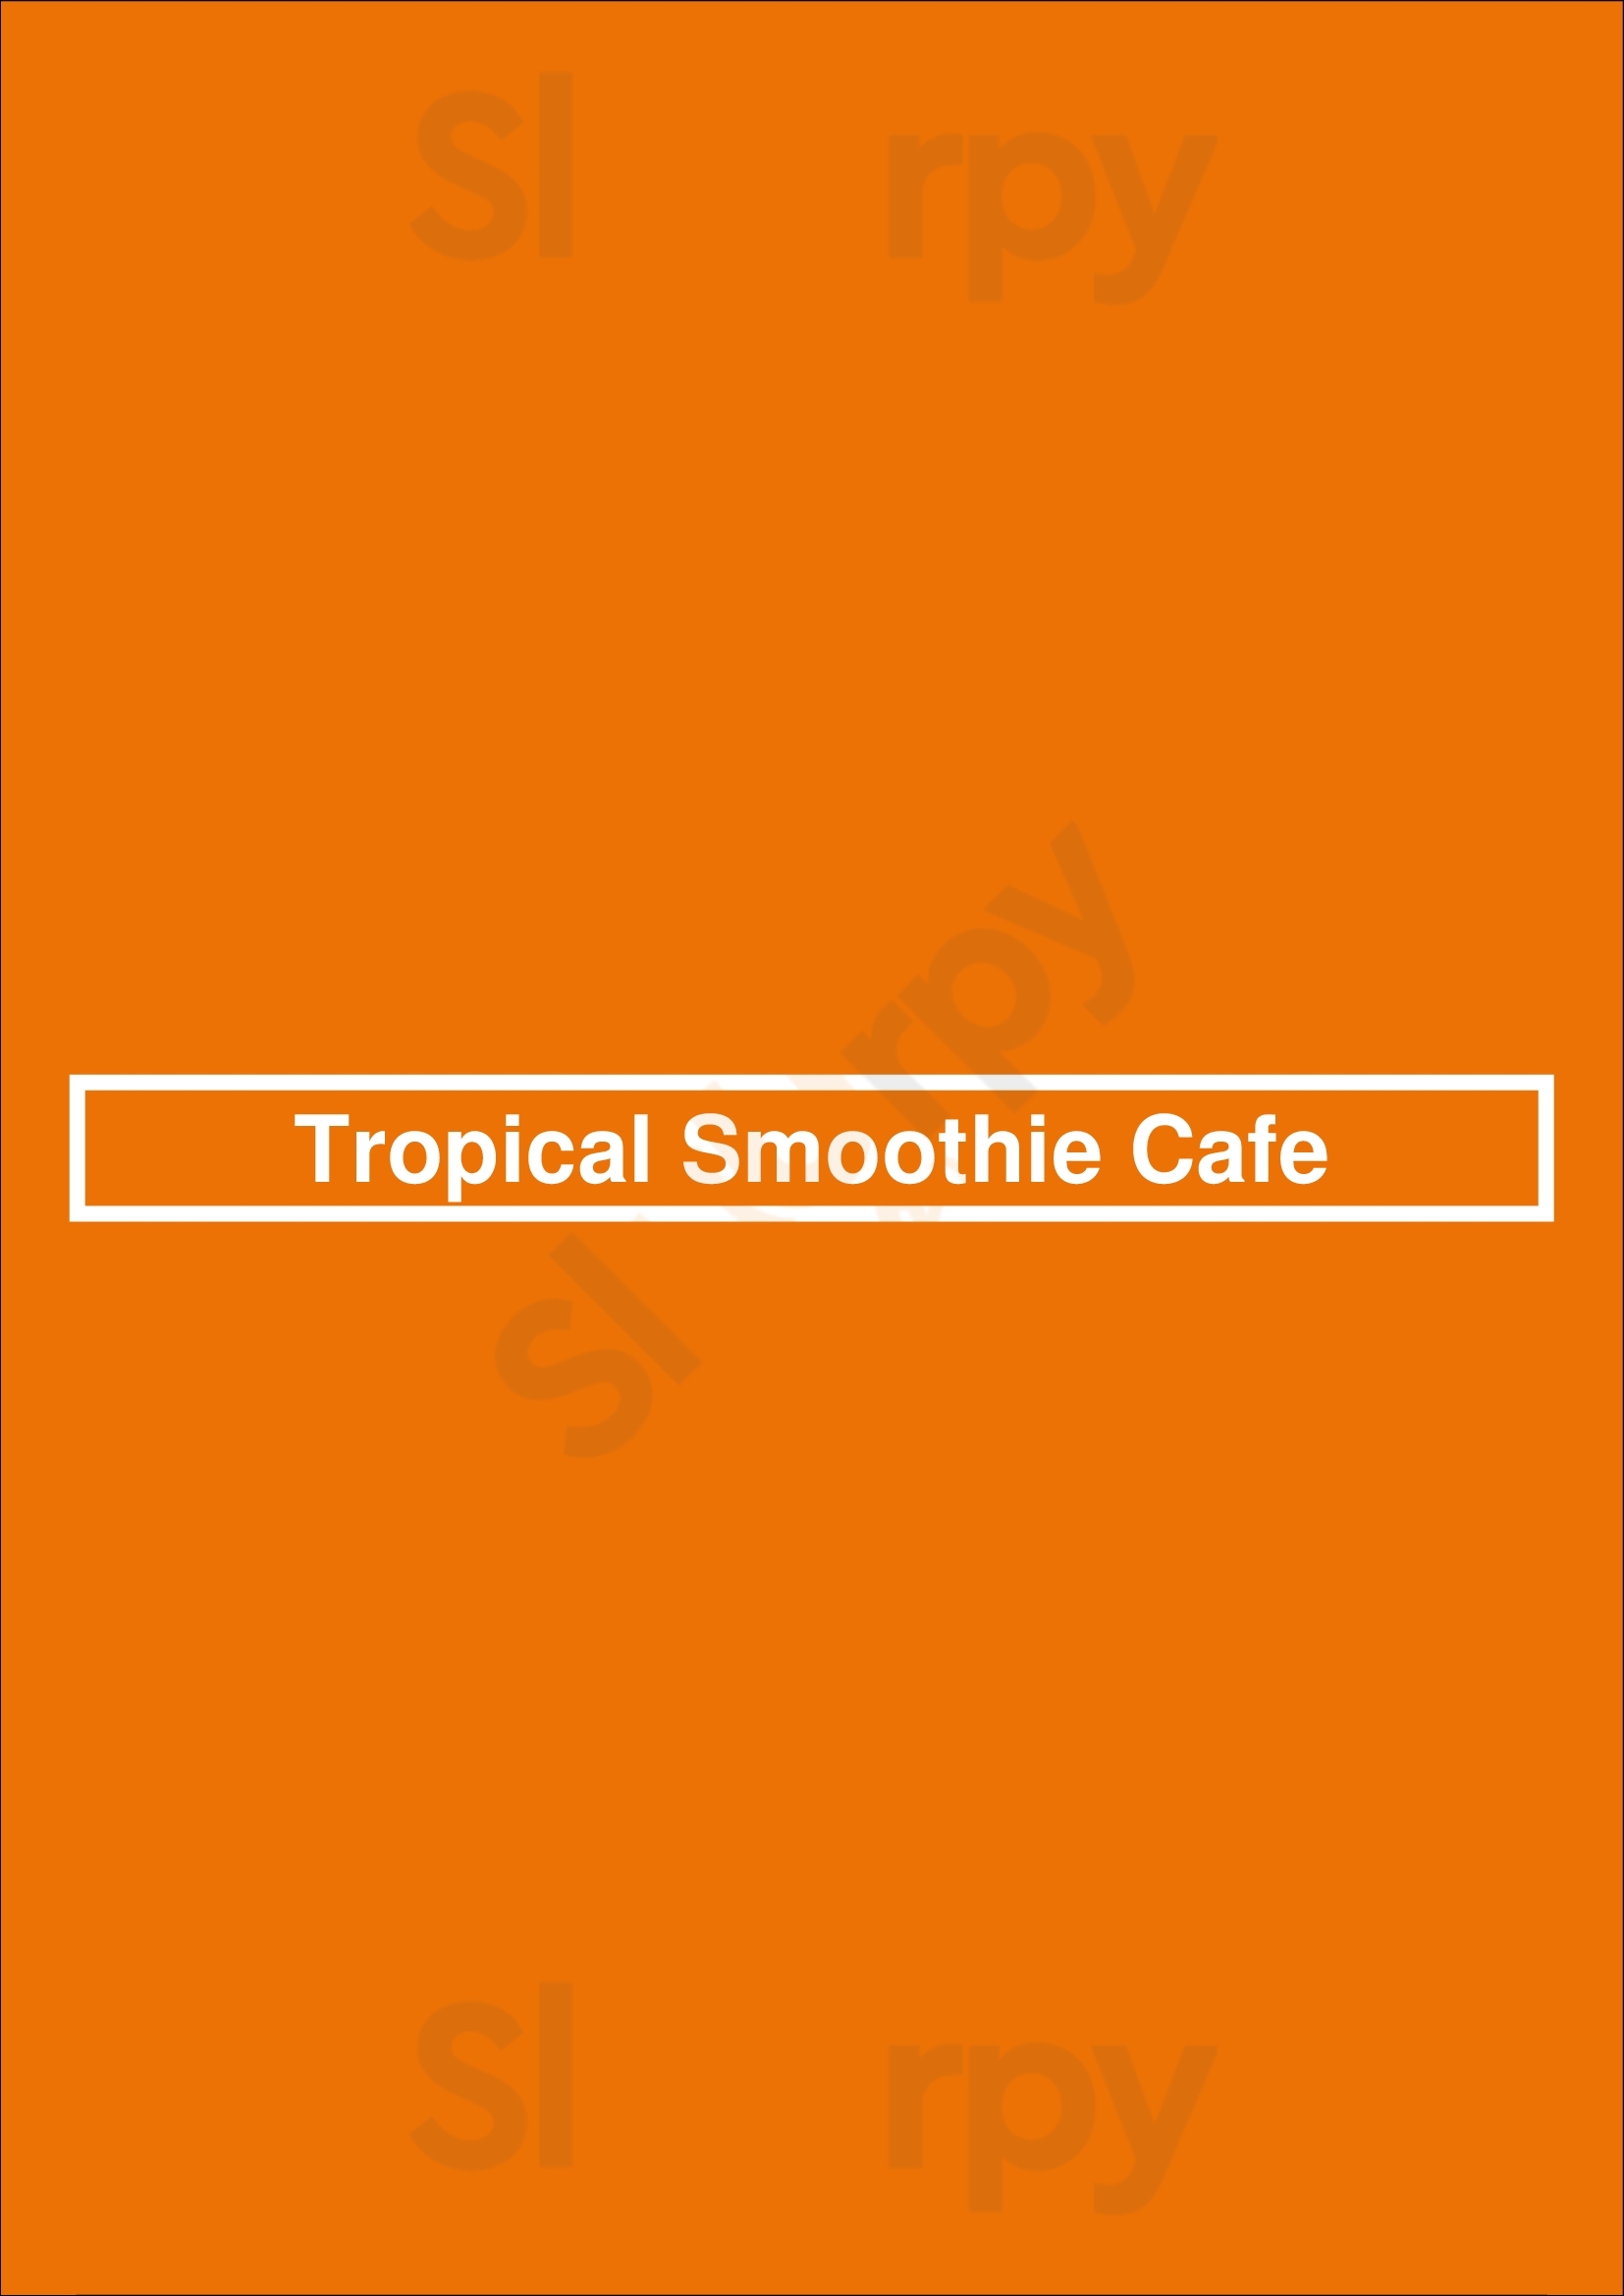 Tropical Smoothie Cafe Tampa Menu - 1